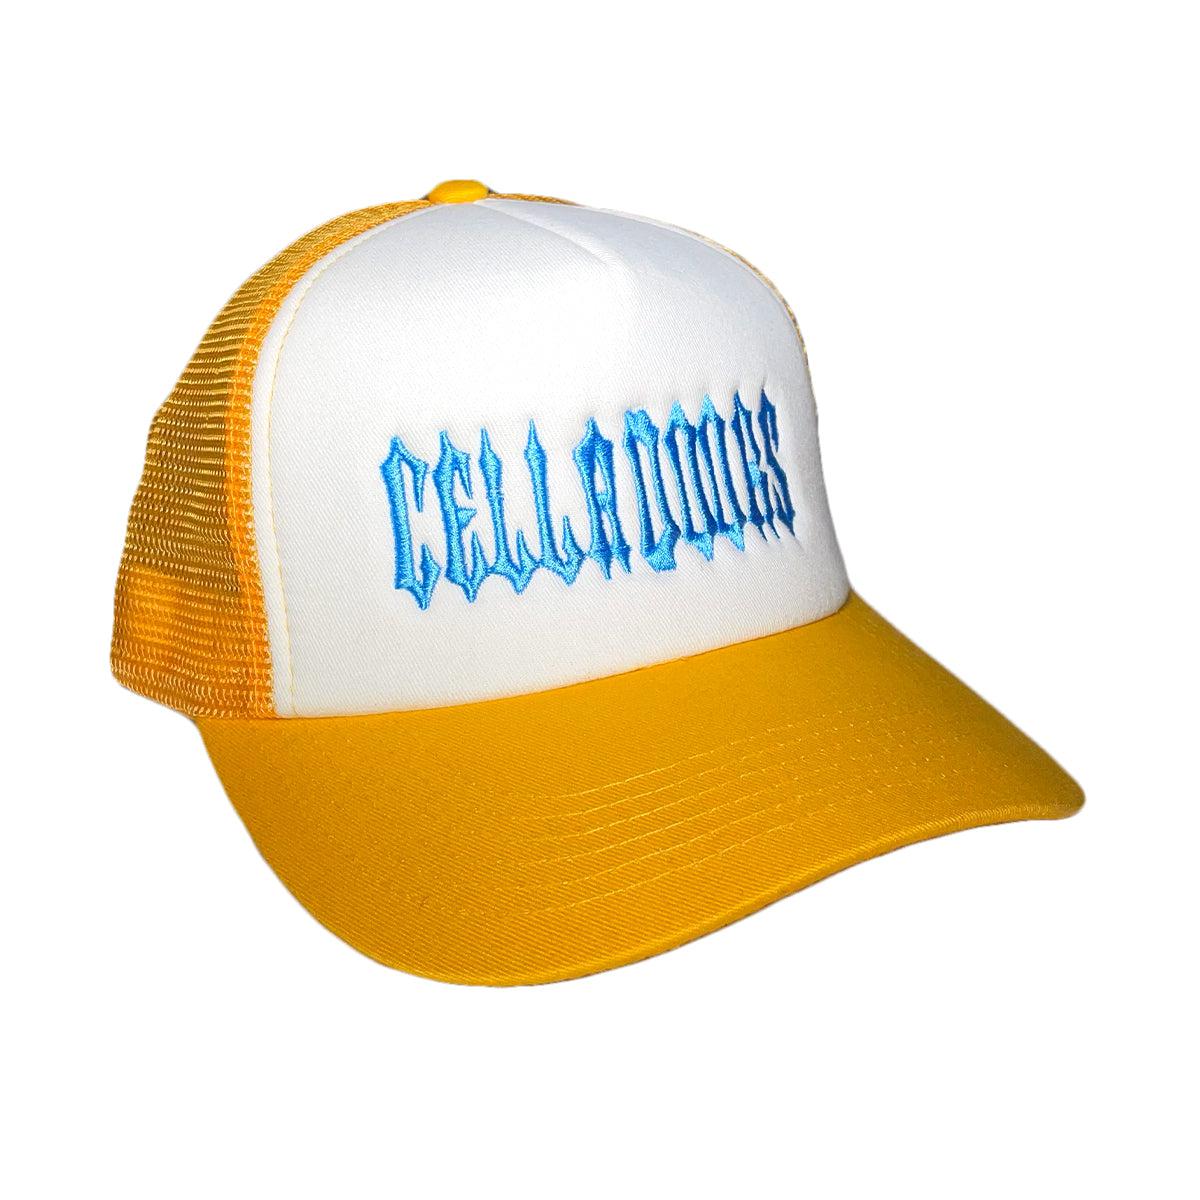 CELLADOORS - Trucker Hat/Yellow